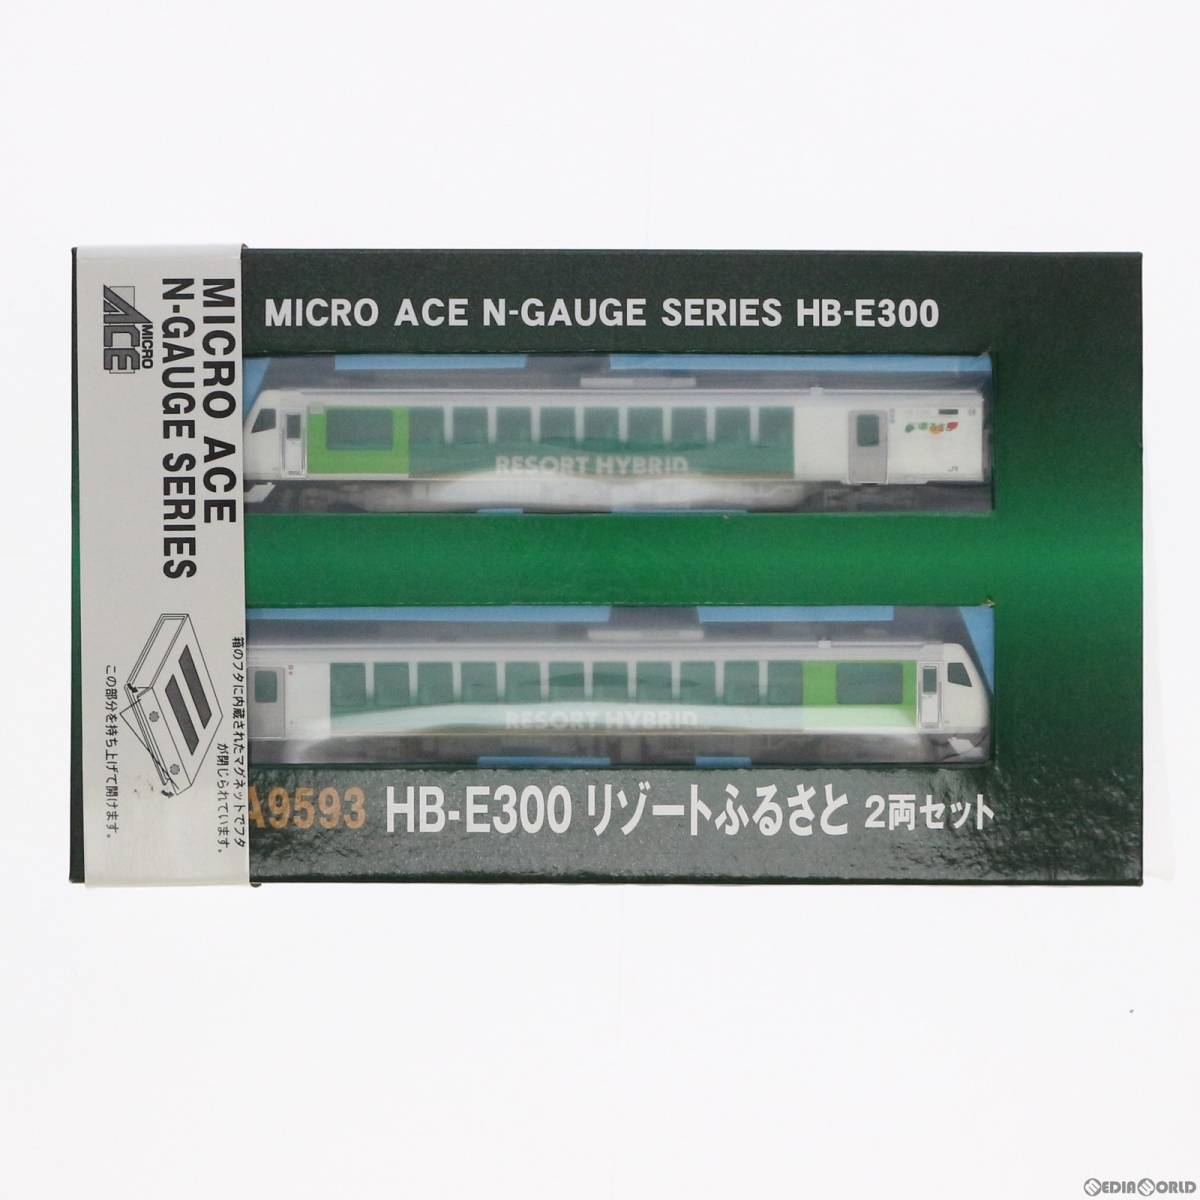 【中古】[RWM]A9593 HB-E300 リゾートふるさと 2両セット(動力付き) Nゲージ 鉄道模型 MICRO ACE(マイクロエース)(62001018)